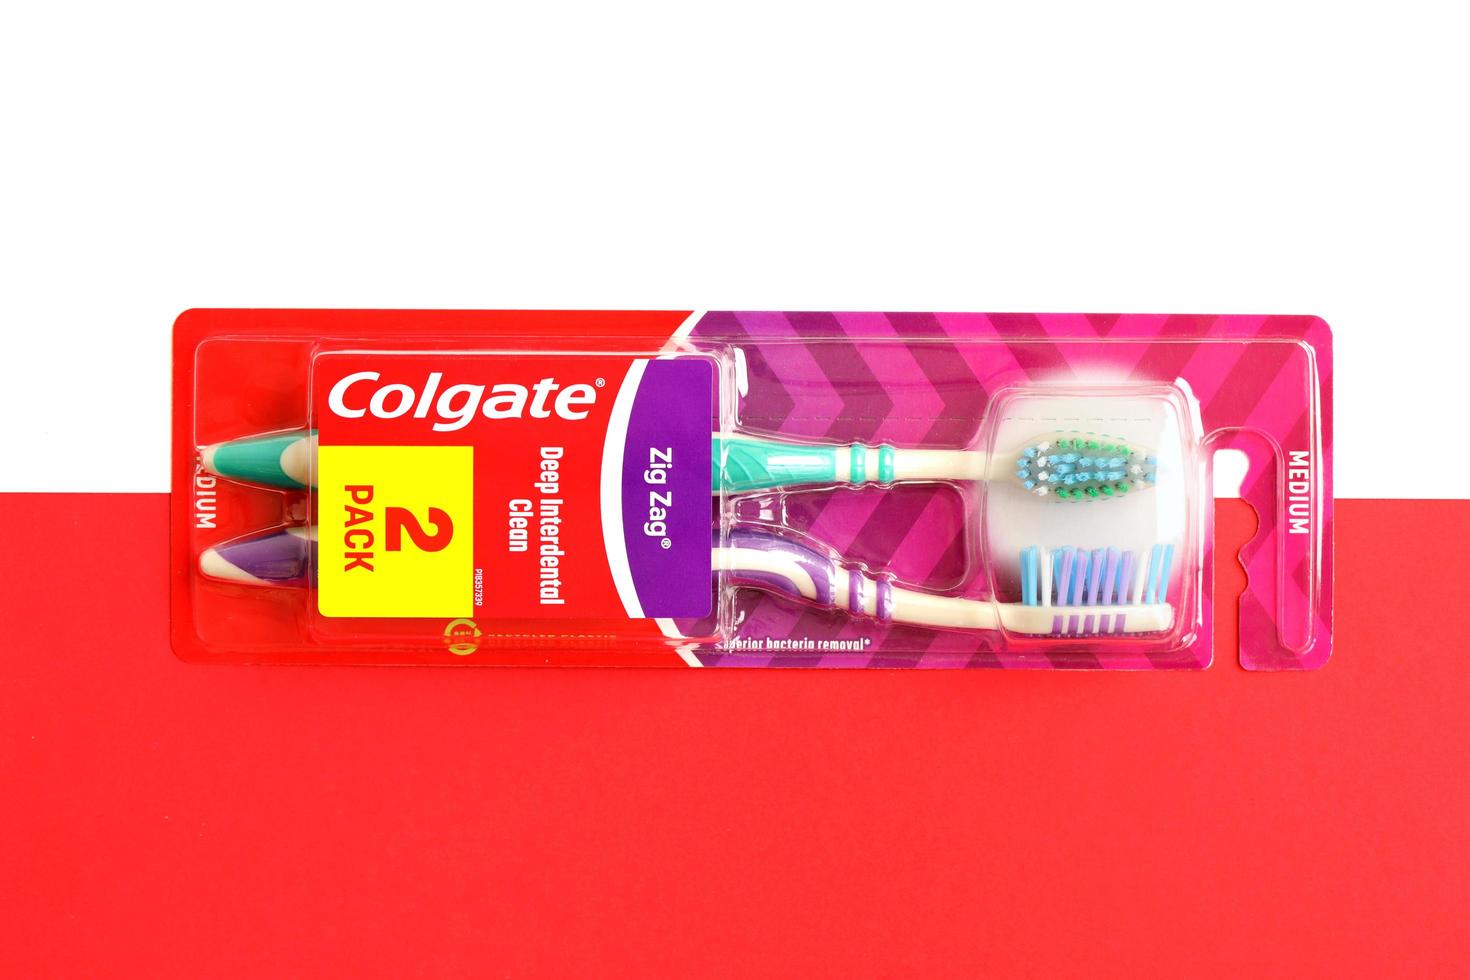 ternopil, ukraine - 23. juni 2022 colgate zahnbürsten, eine marke von mundhygieneprodukten, die vom amerikanischen konsumgüterunternehmen colgate-palmolive hergestellt werden foto